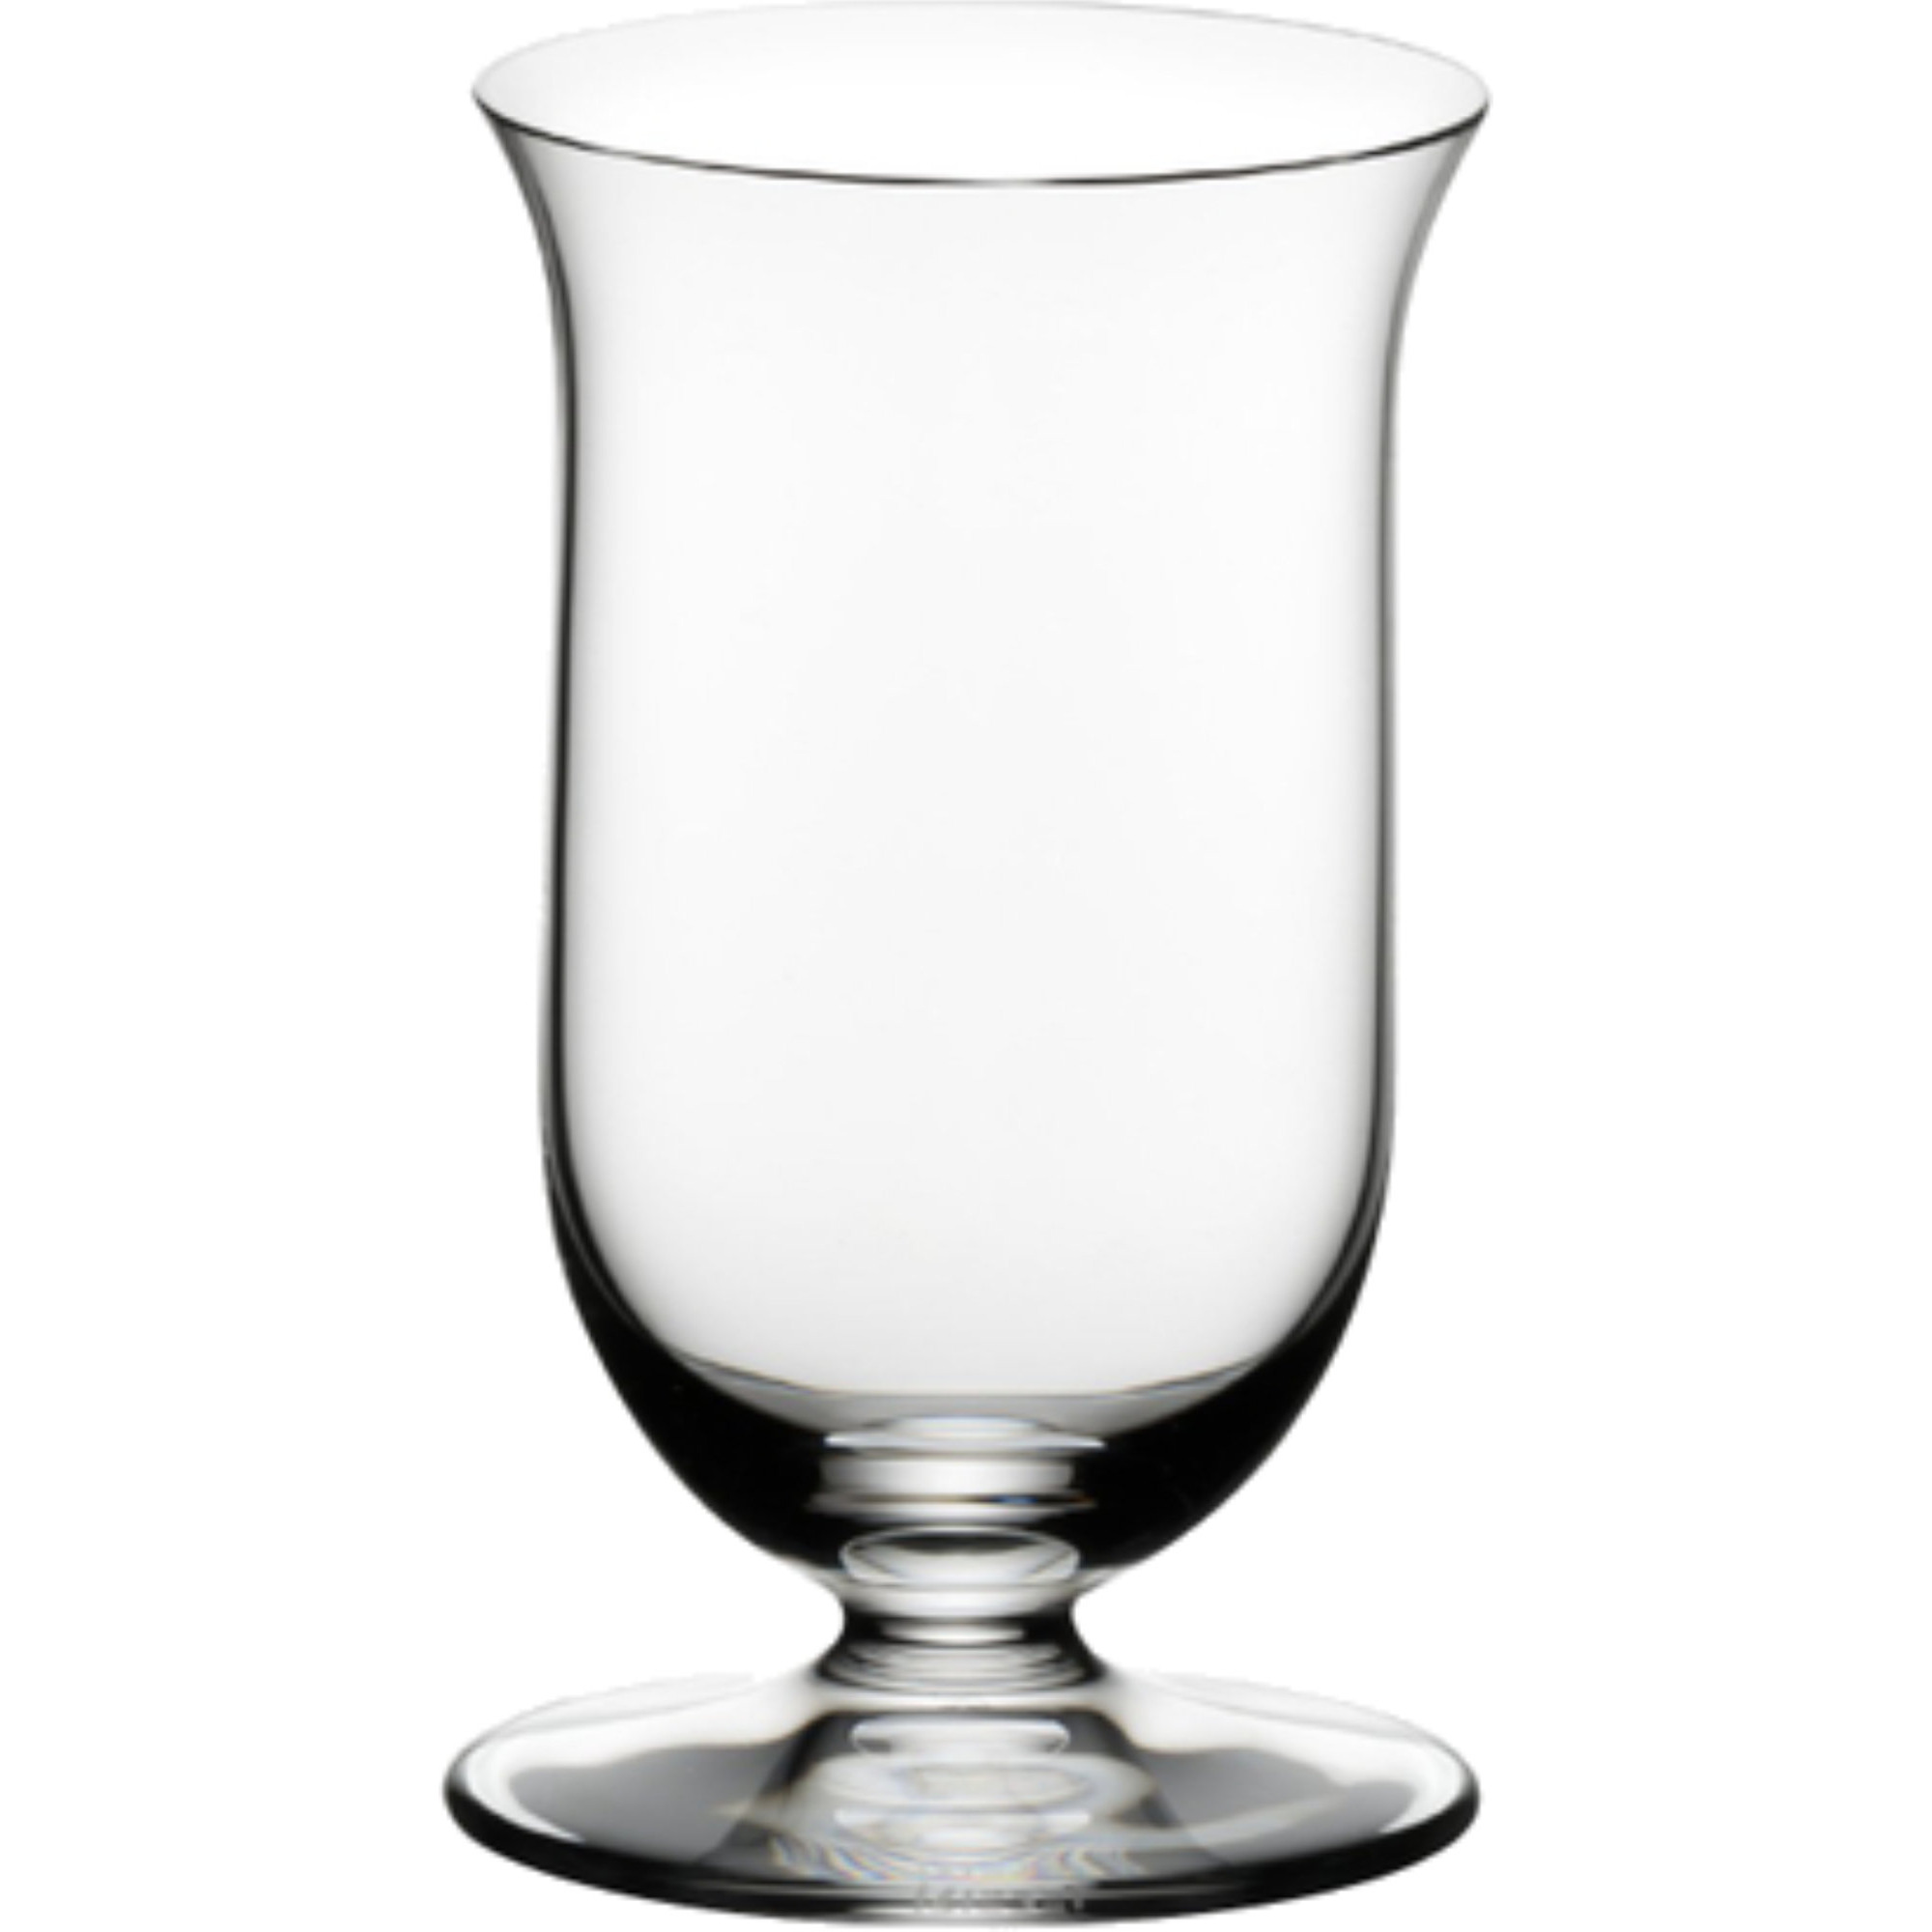 #1 på vores liste over whiskyglass er Whiskyglas